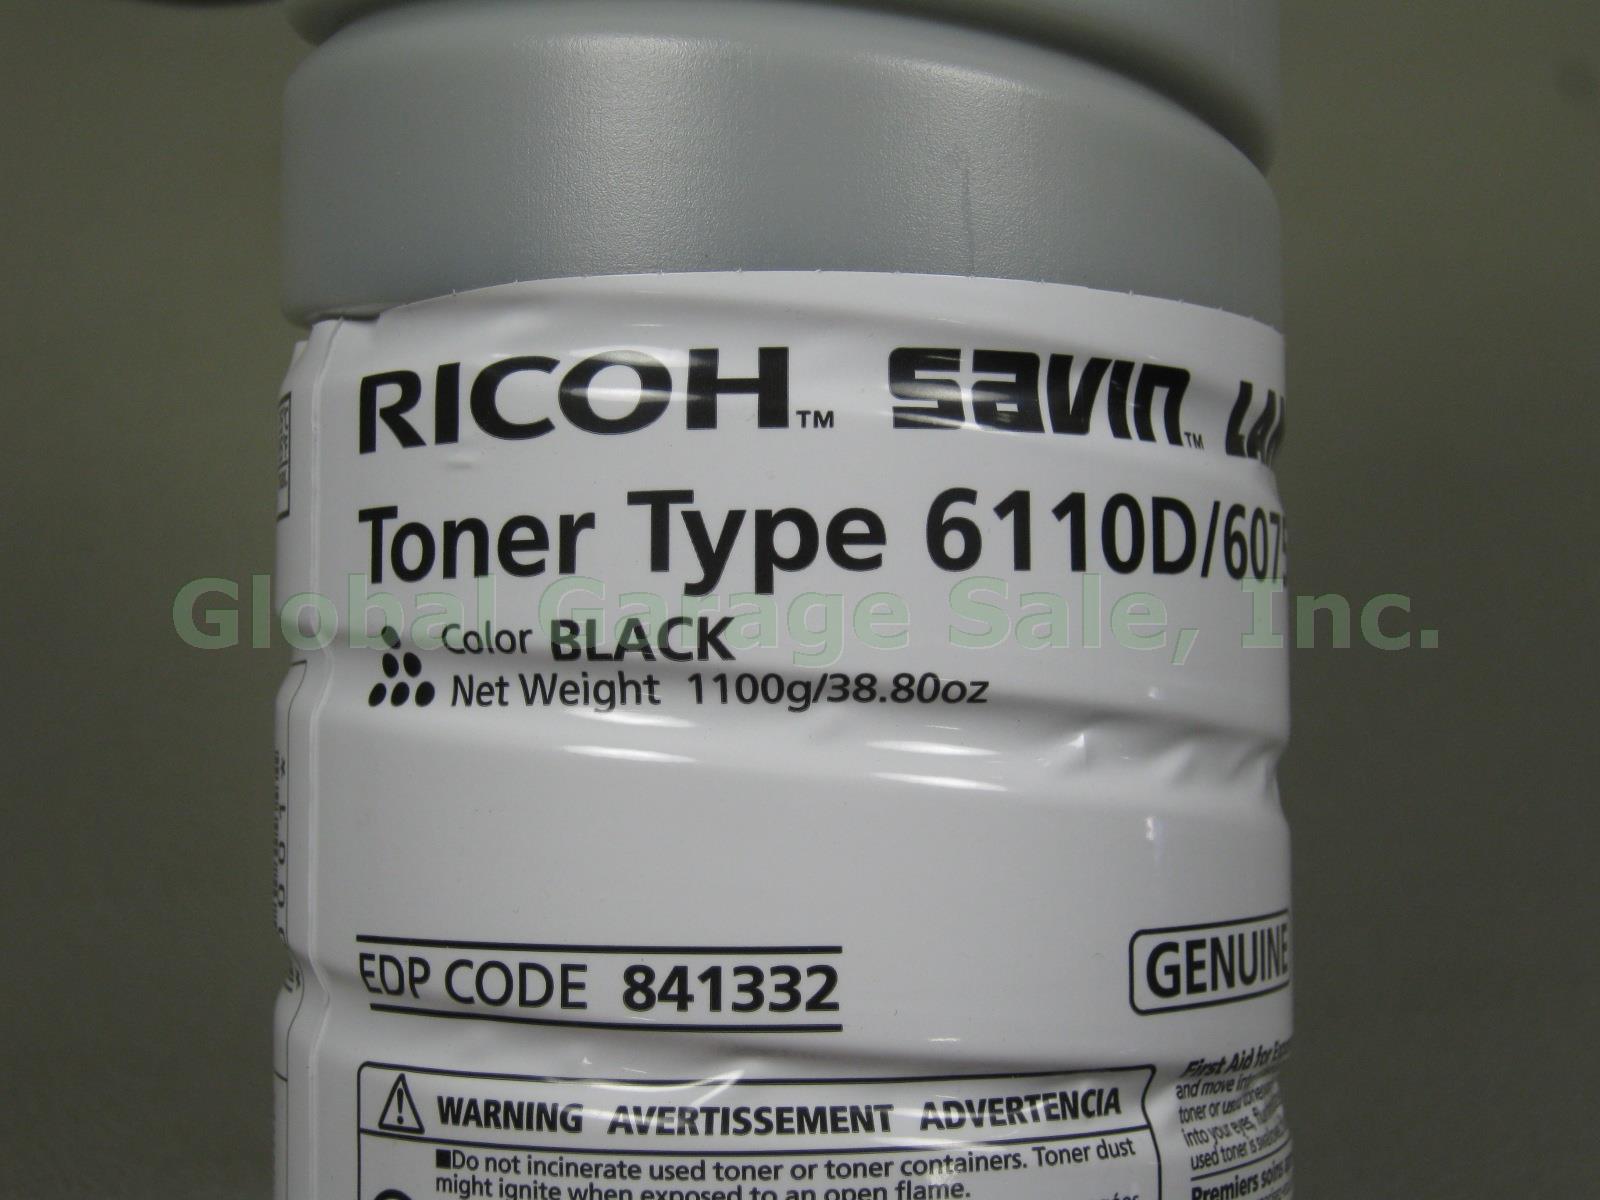 4 New Ricoh Savin Lanier Toner Type 6110D 6075 Black Bottle EDP Code 841332 Lot 1